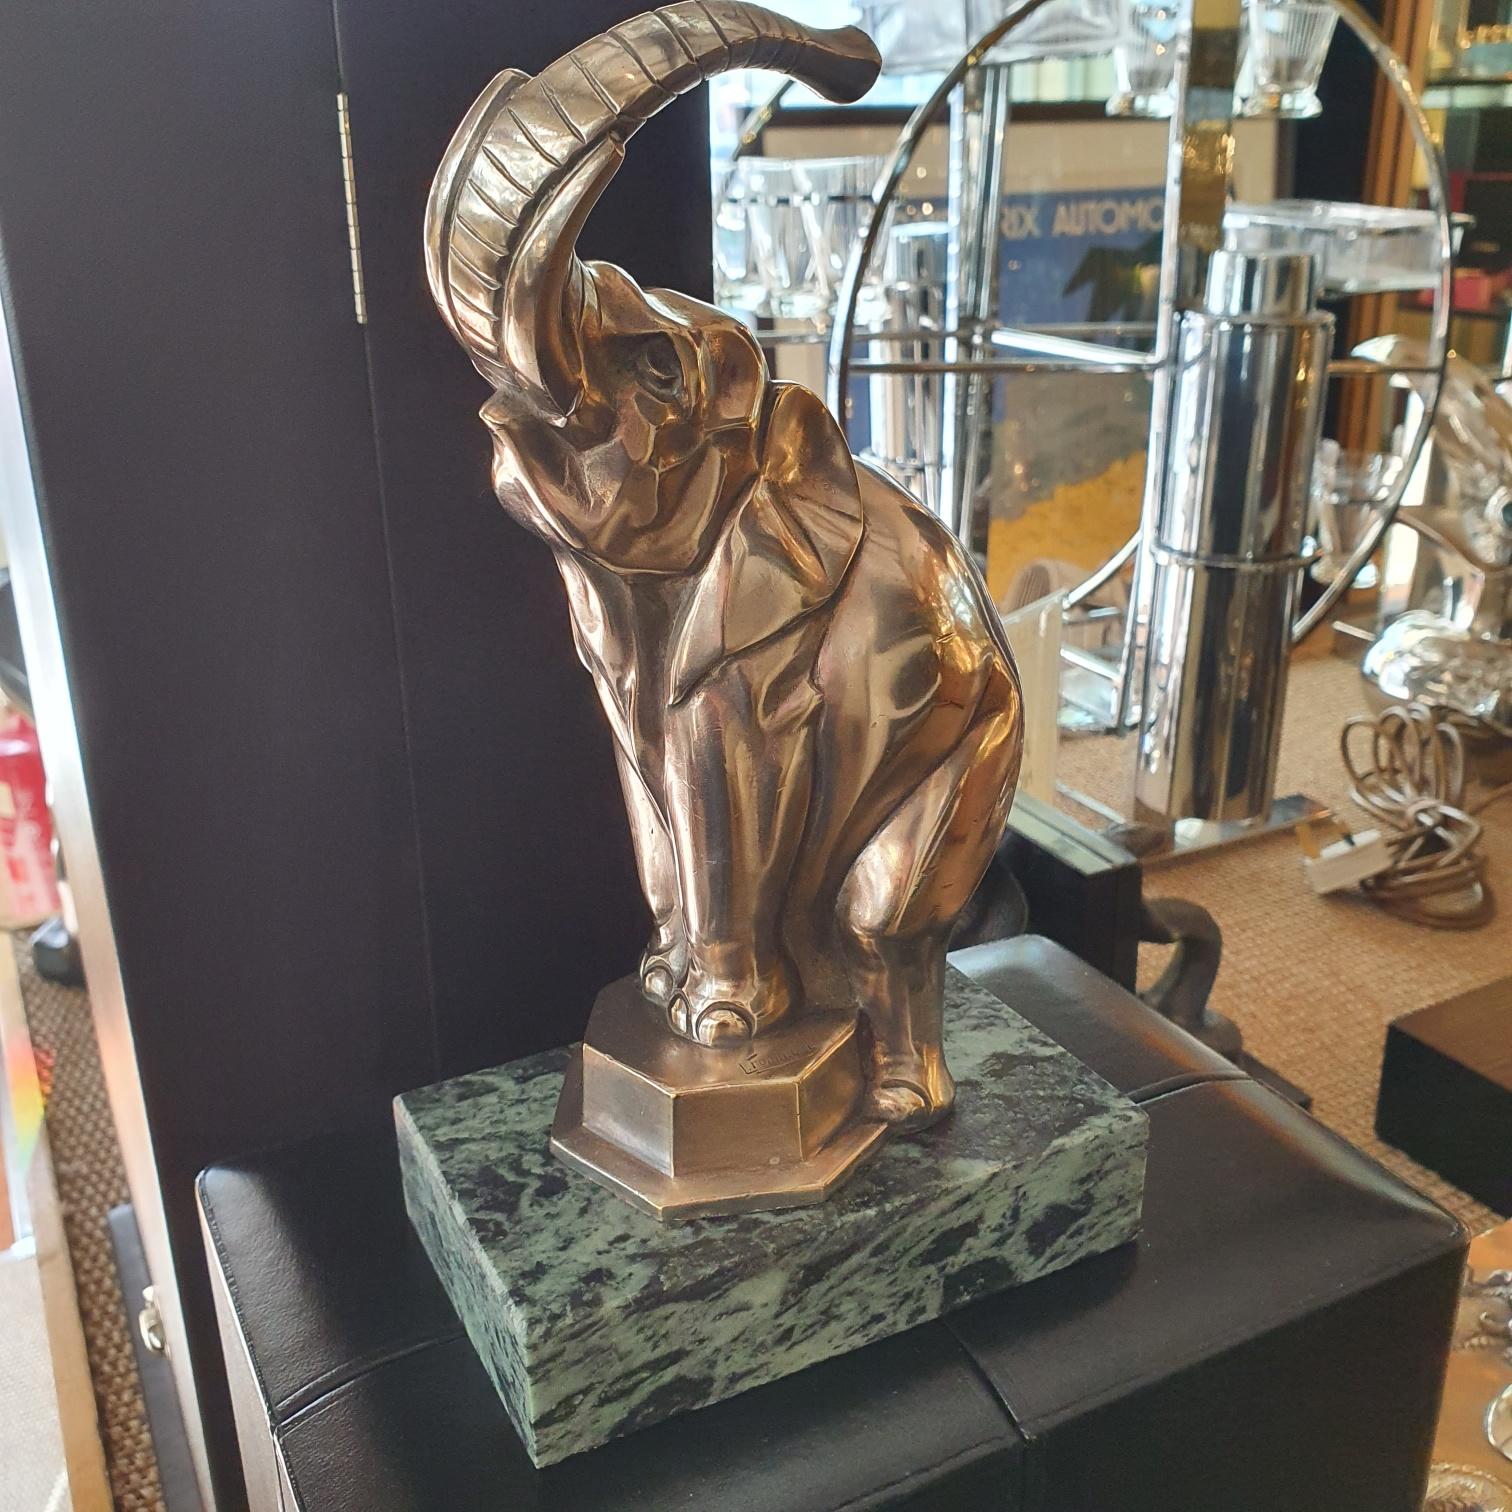 Jean de la Fontinelle (français, 1900-1974)

Magnifique sculpture Art déco en bronze argenté en forme d'éléphant, la trompe en l'air et les pattes reposant sur un socle heptagonal comme s'il s'agissait d'un spectacle de cirque. Le bronze est monté